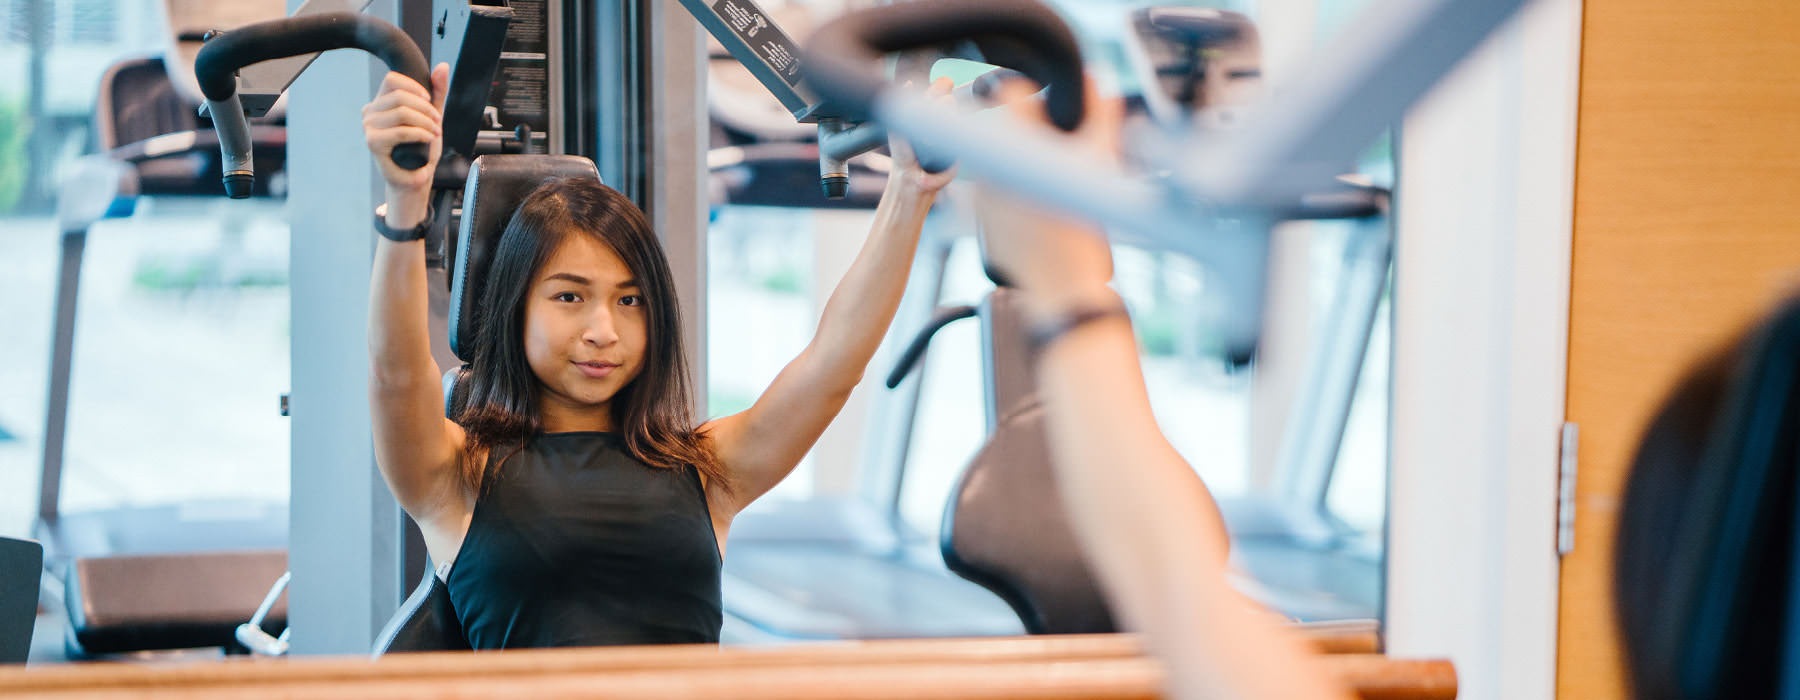 girl exercising in fitness center